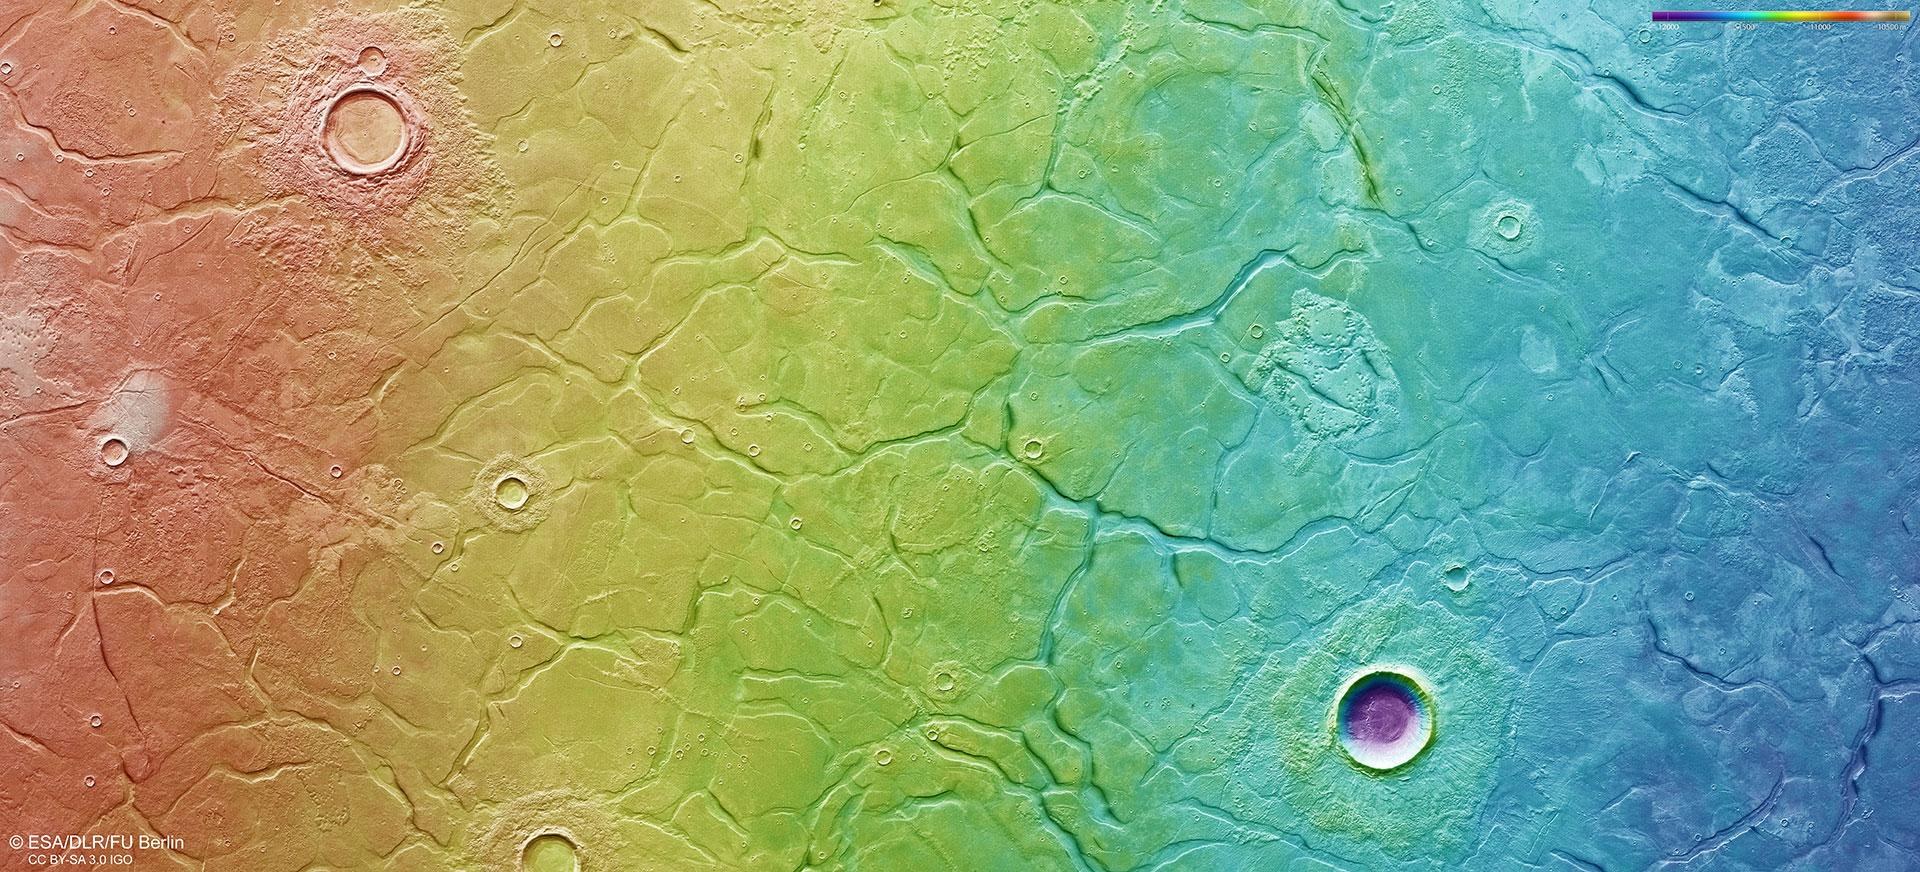 Topographische Bildkarte eines Teils der Region Utopia Planitia